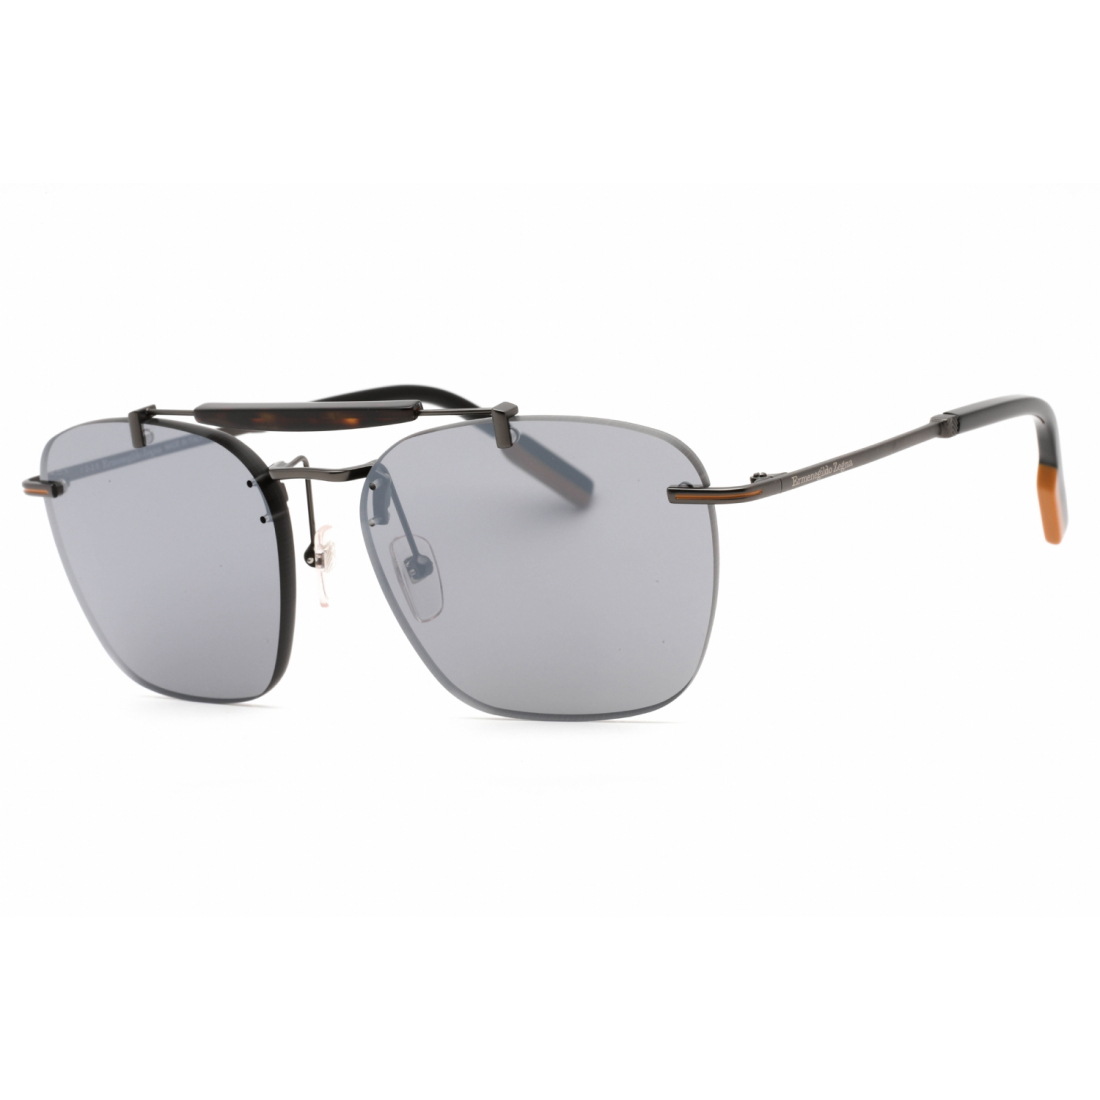 Men's 'EZ0155' Sunglasses